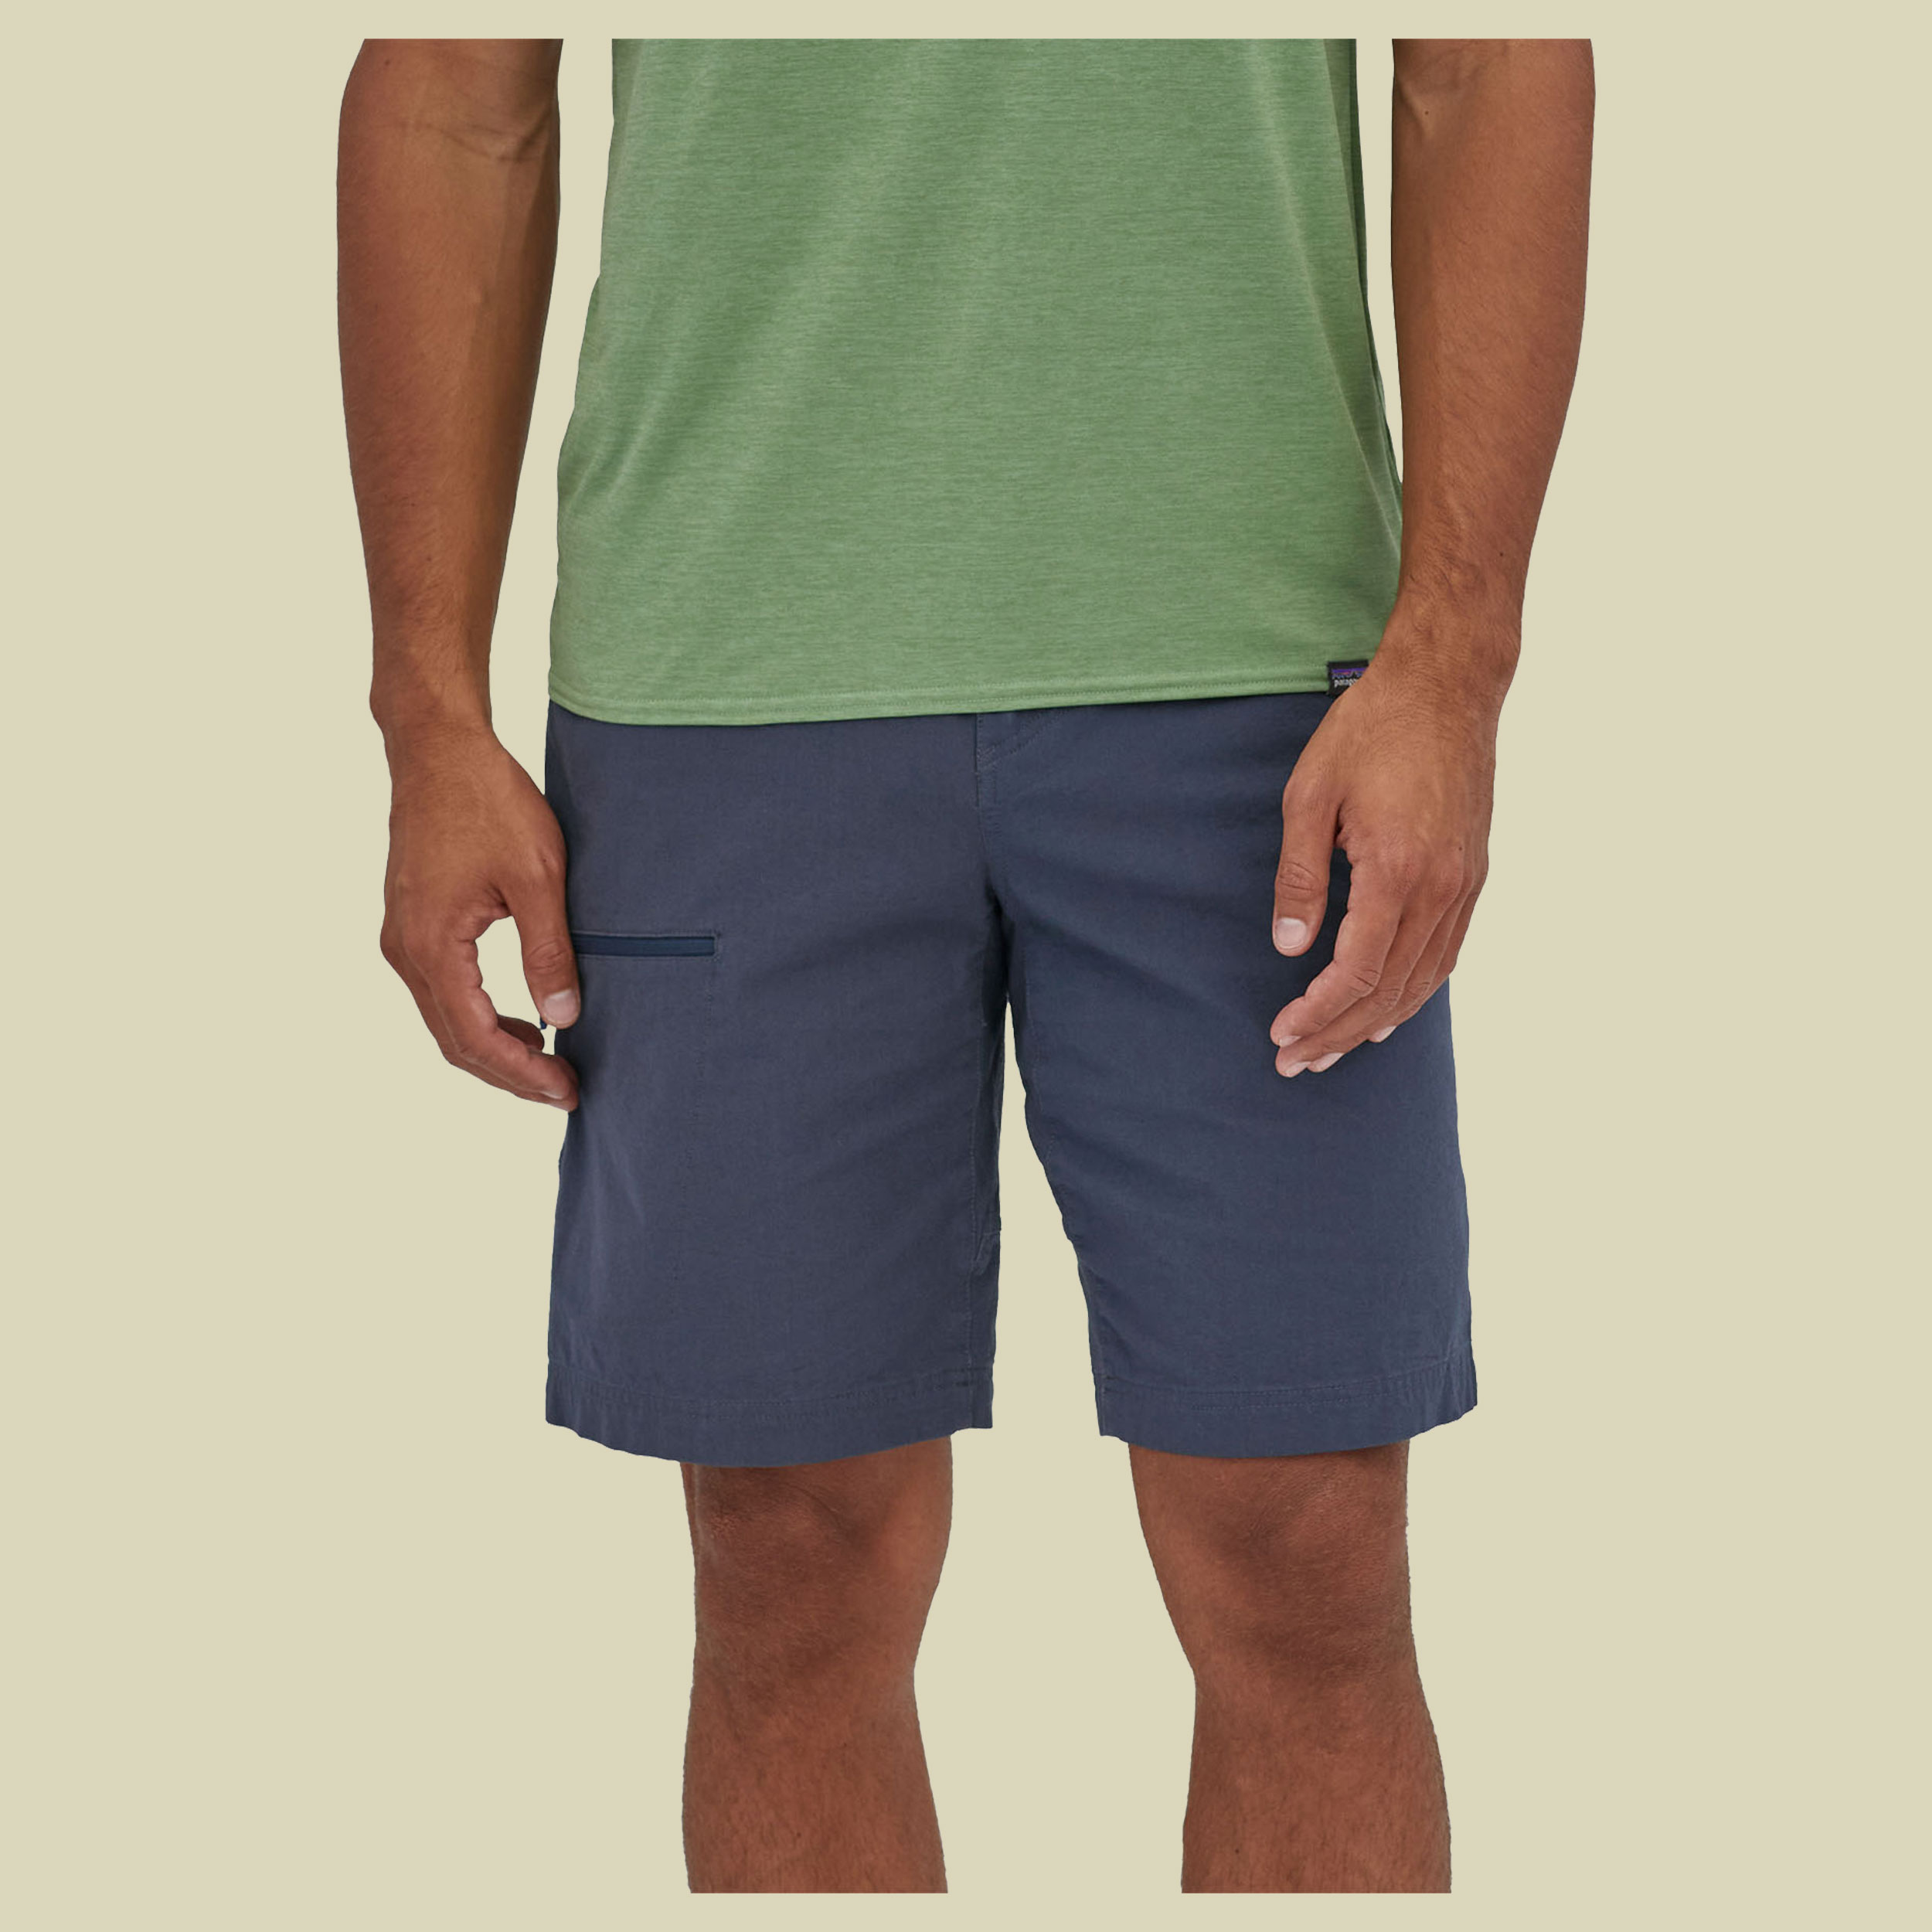 Venga Rock Shorts Men blau 30 - utility blue